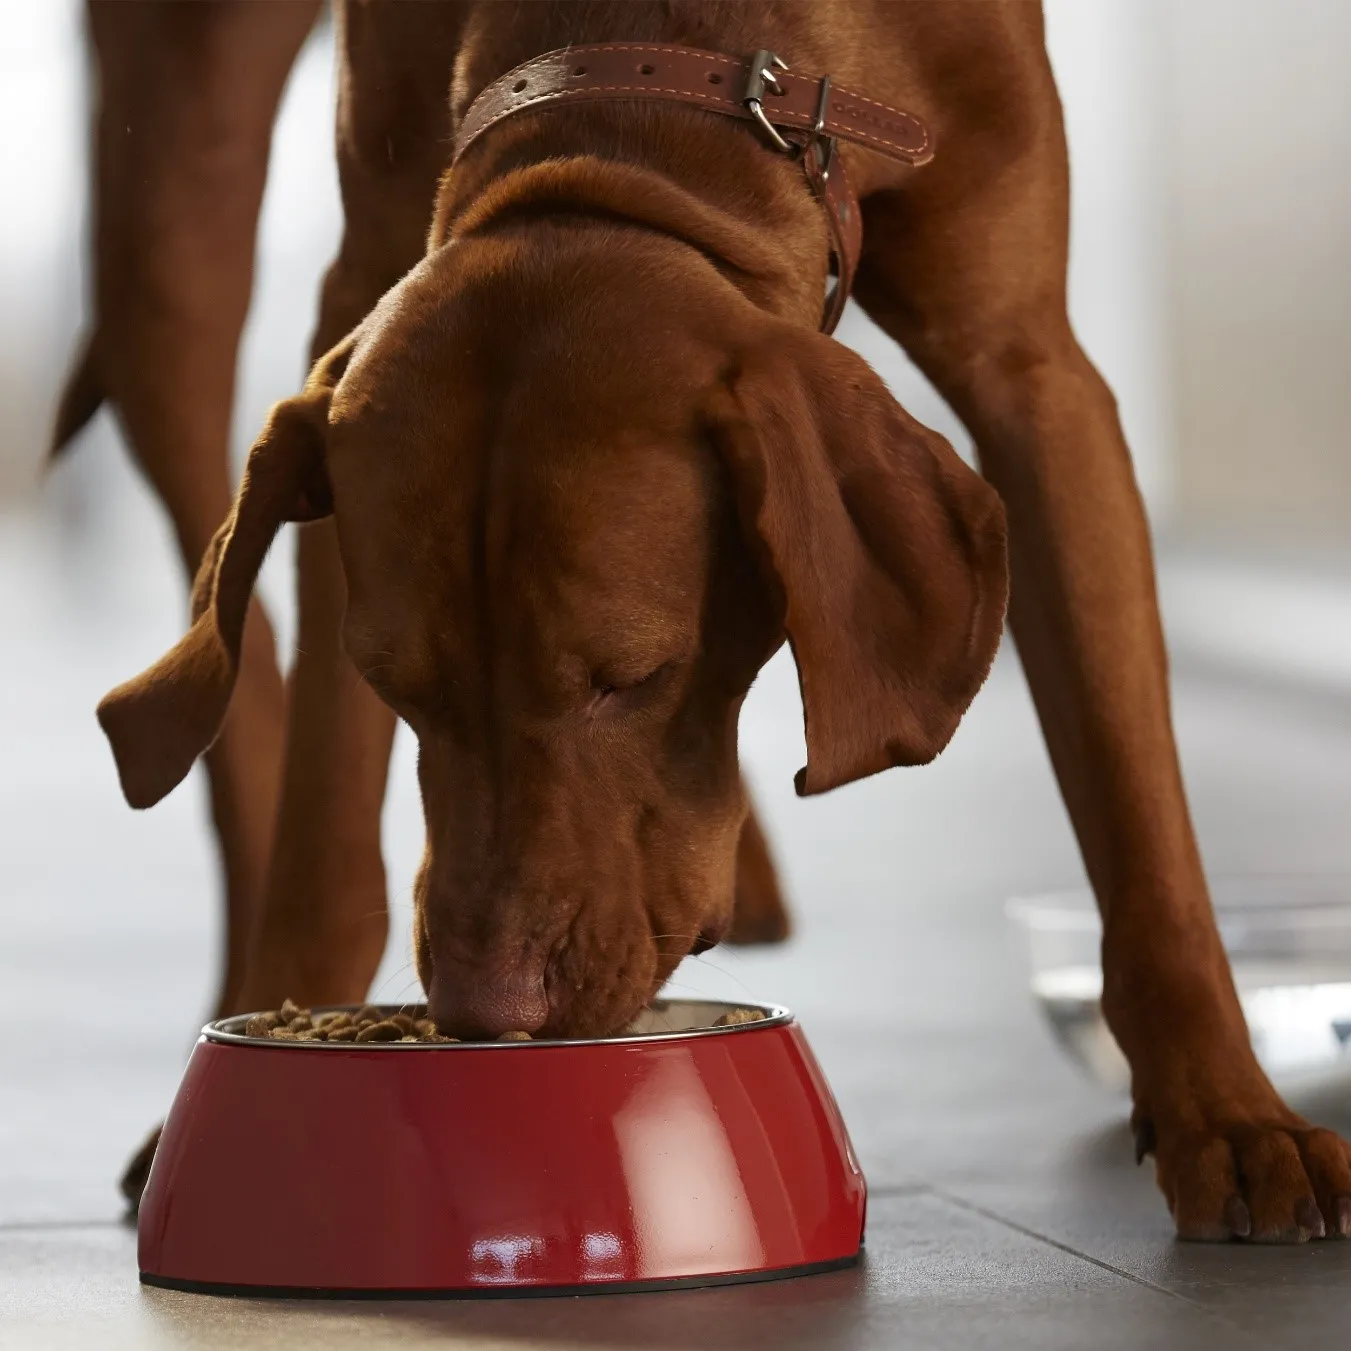 Vizsla comiendo. La alimentación es clave y es parte vital de cómo cuidar a un perro senior.